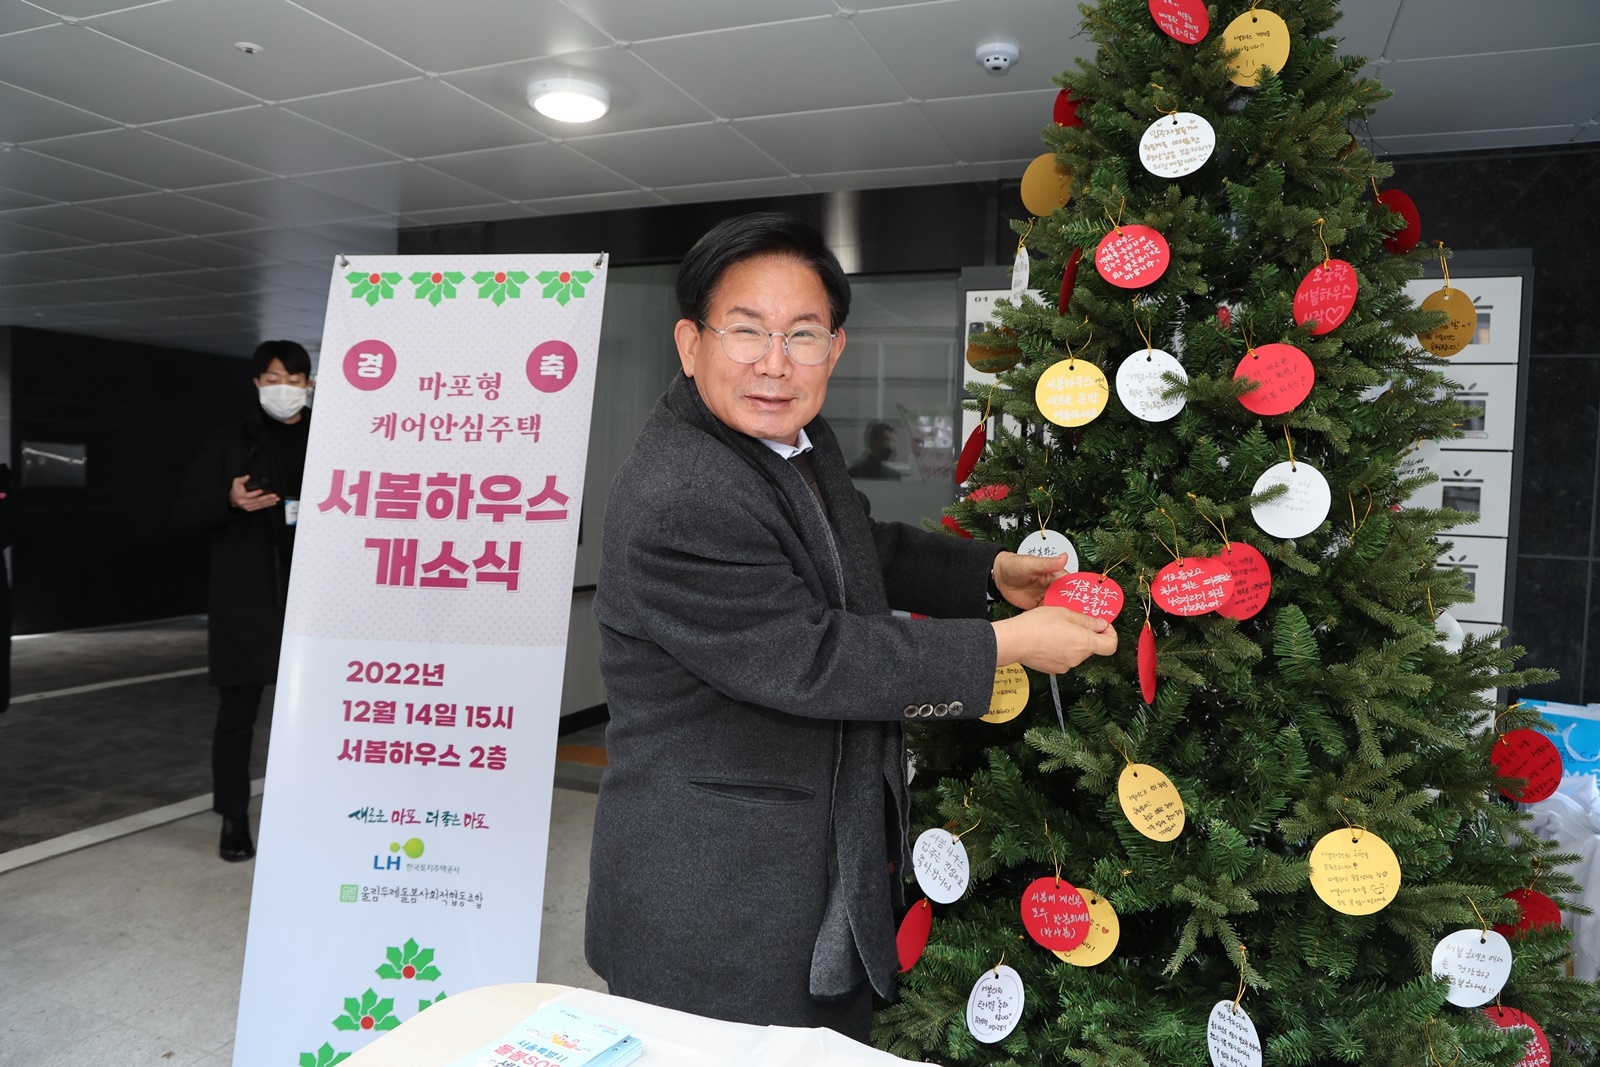 박강수 마포구청장이 서봄하우스 개소식 기념 트리에 축하메시지를 달고 있다./사진제공=마포구 